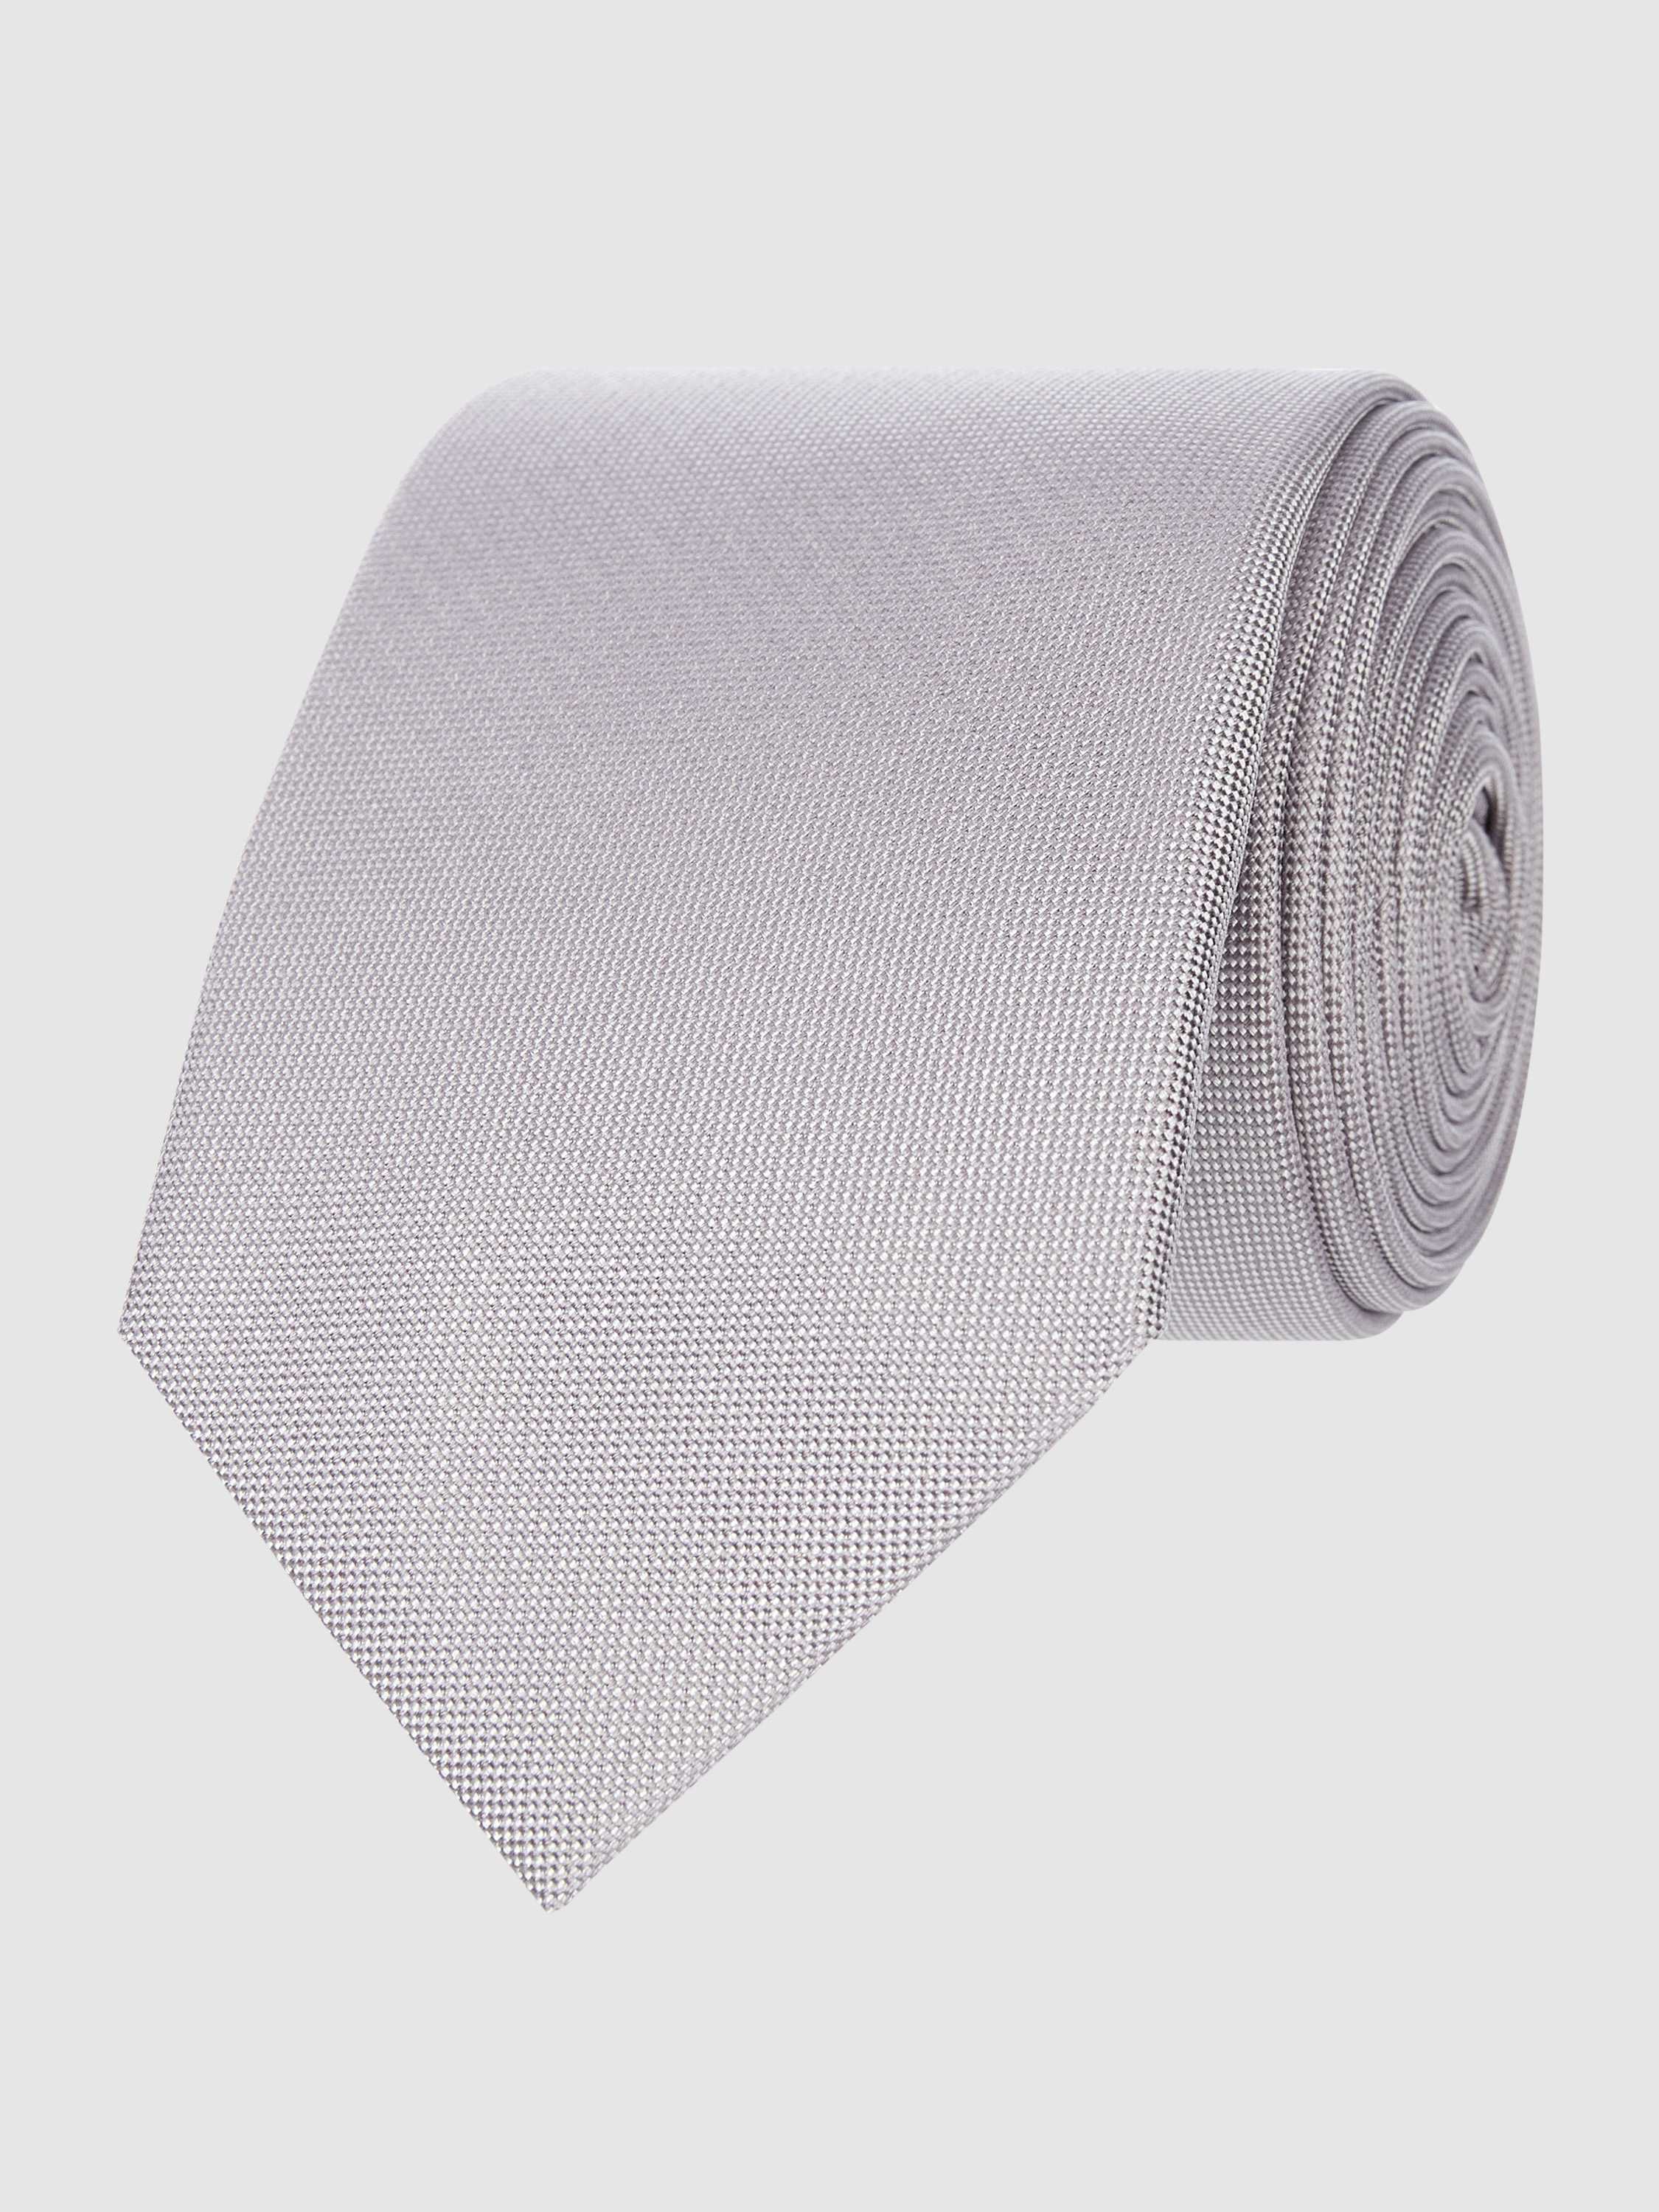 Krawatte aus reiner Seide (6,5 cm)